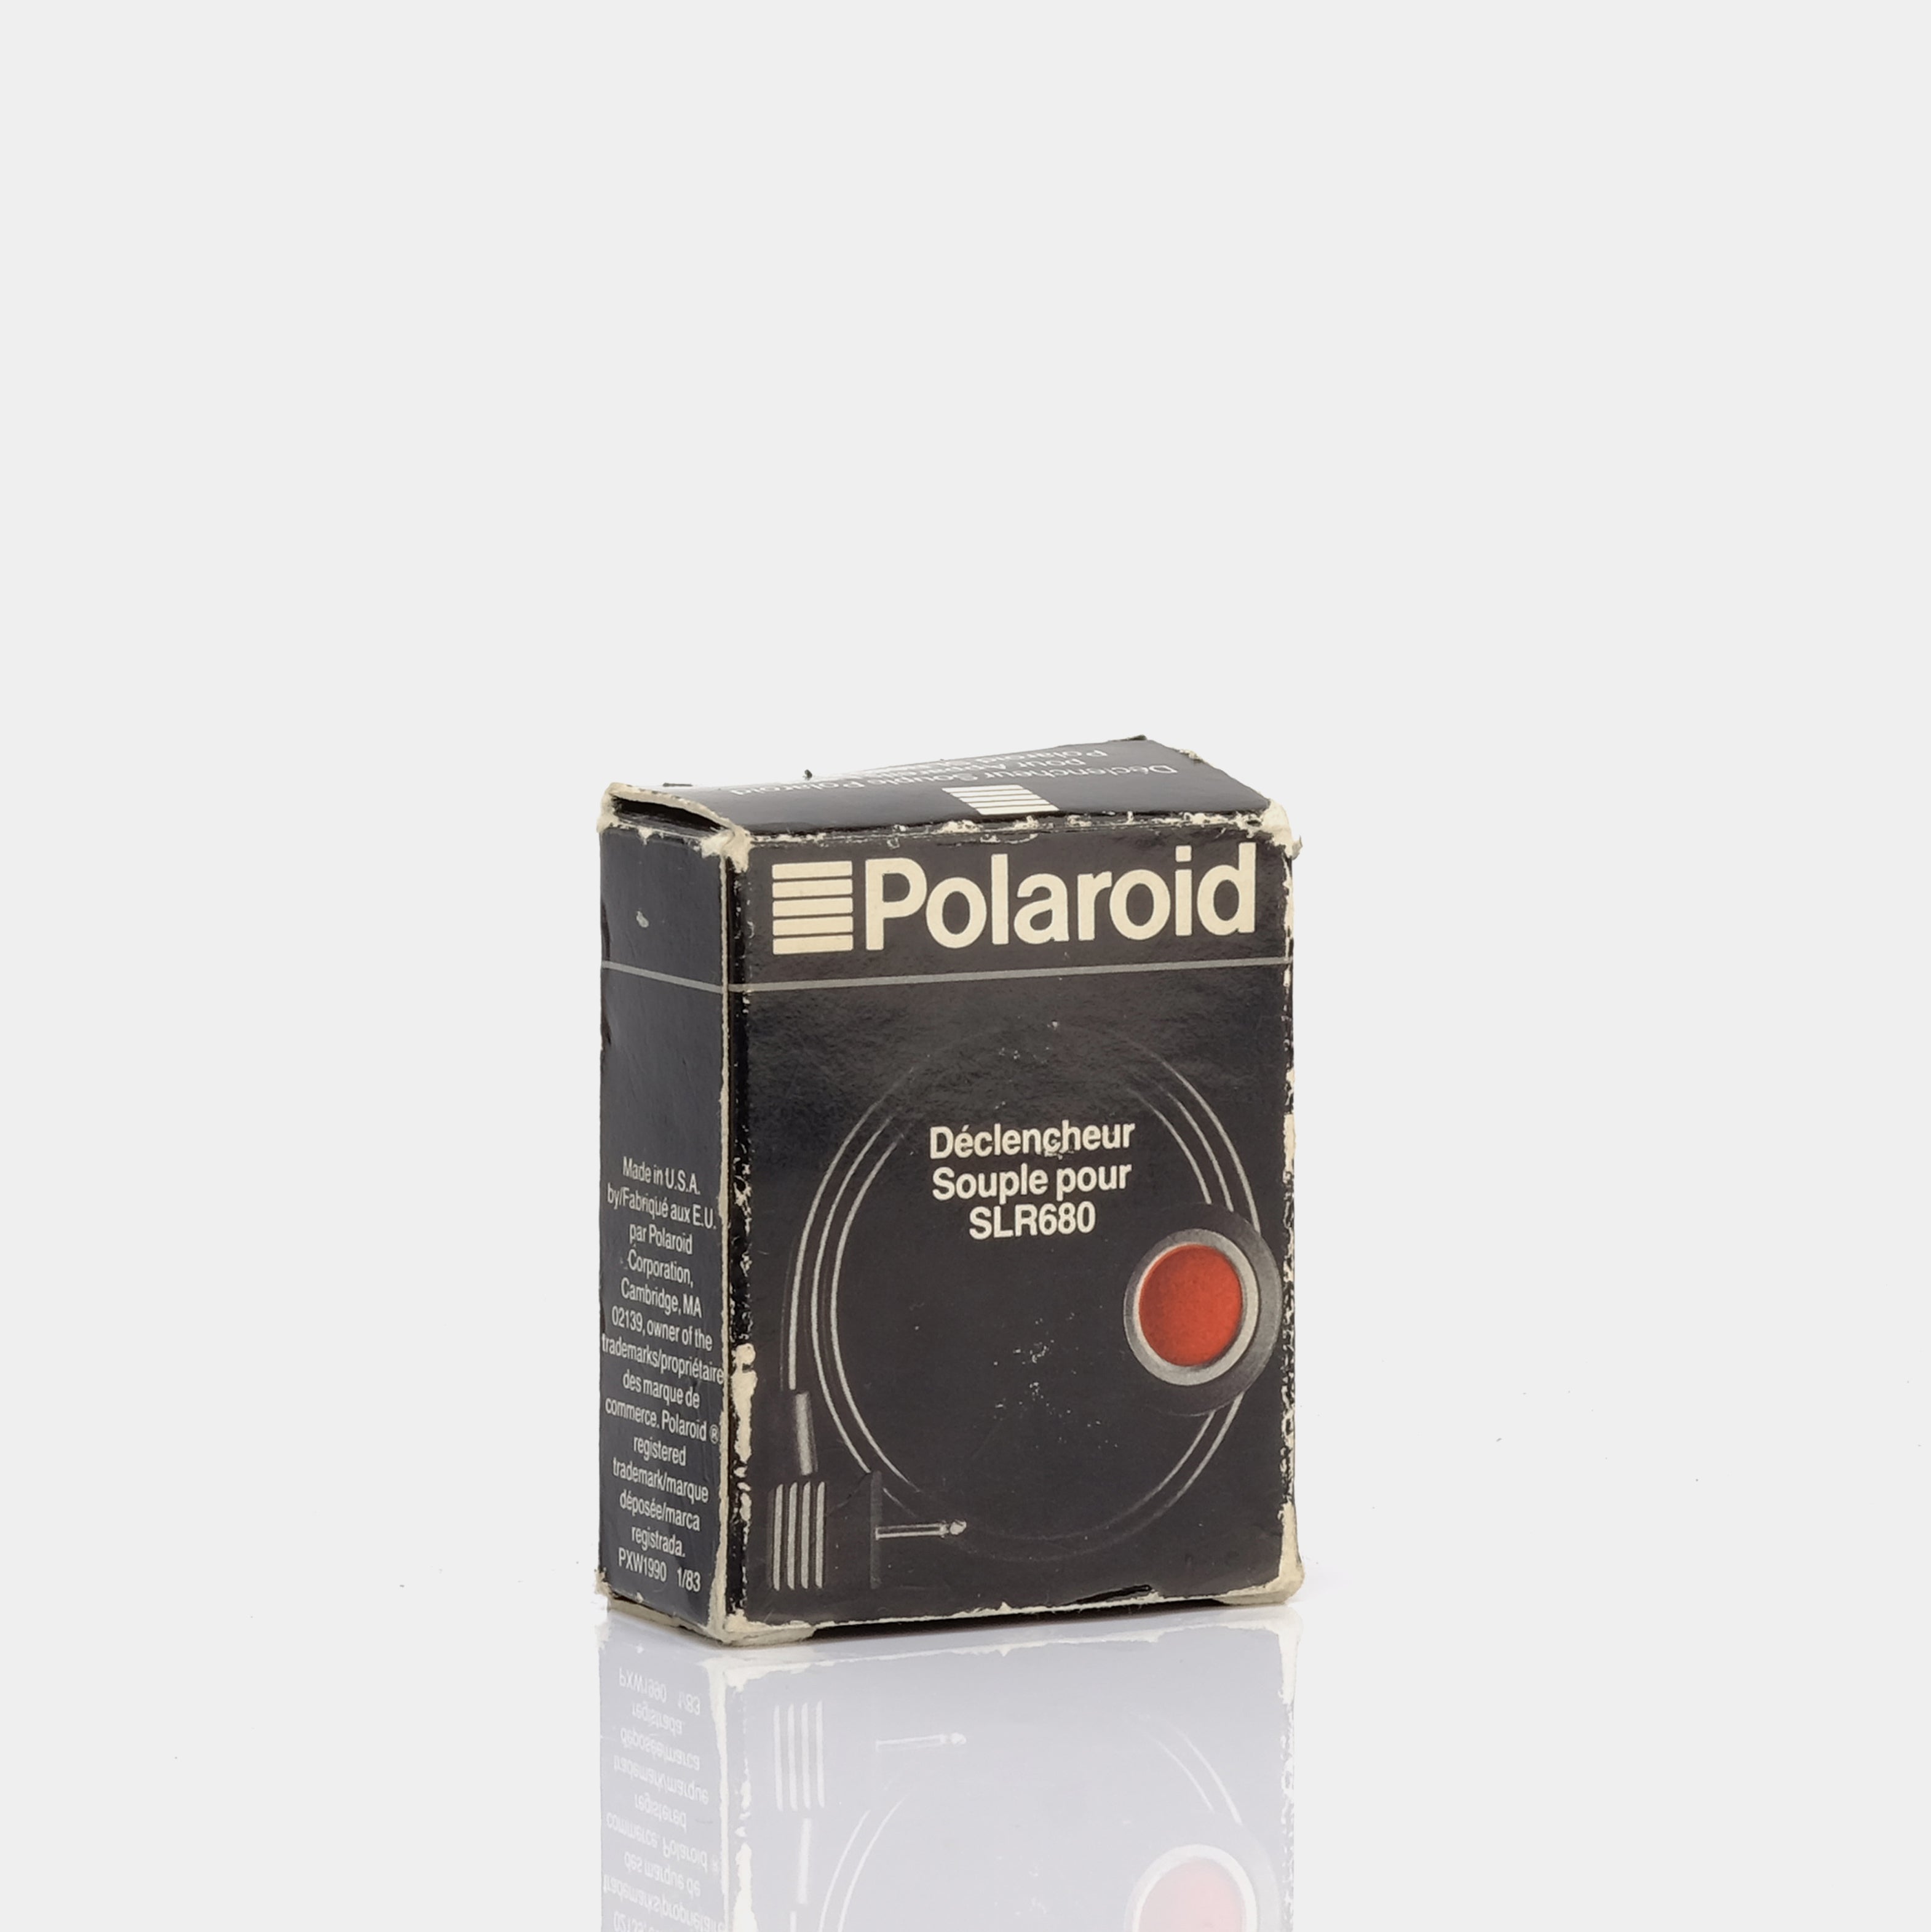 Polaroid Remote Shutter Button for SLR680